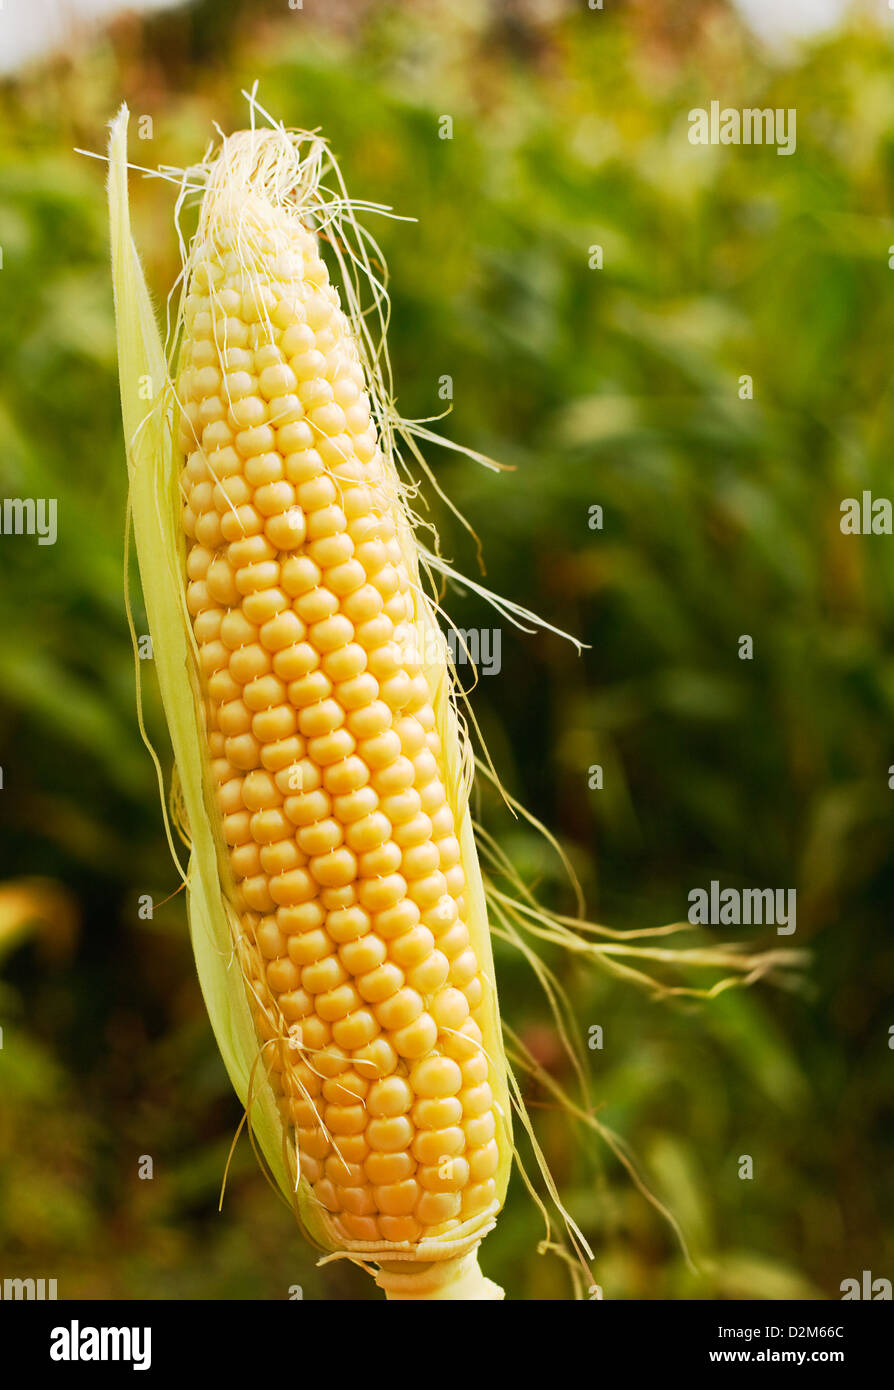 Épi de maïs ou de maïs d'une ferme ou d'aliments pour animaux génétiquement modifiés souvent maintenant de fourrage pour un rendement accru. Banque D'Images